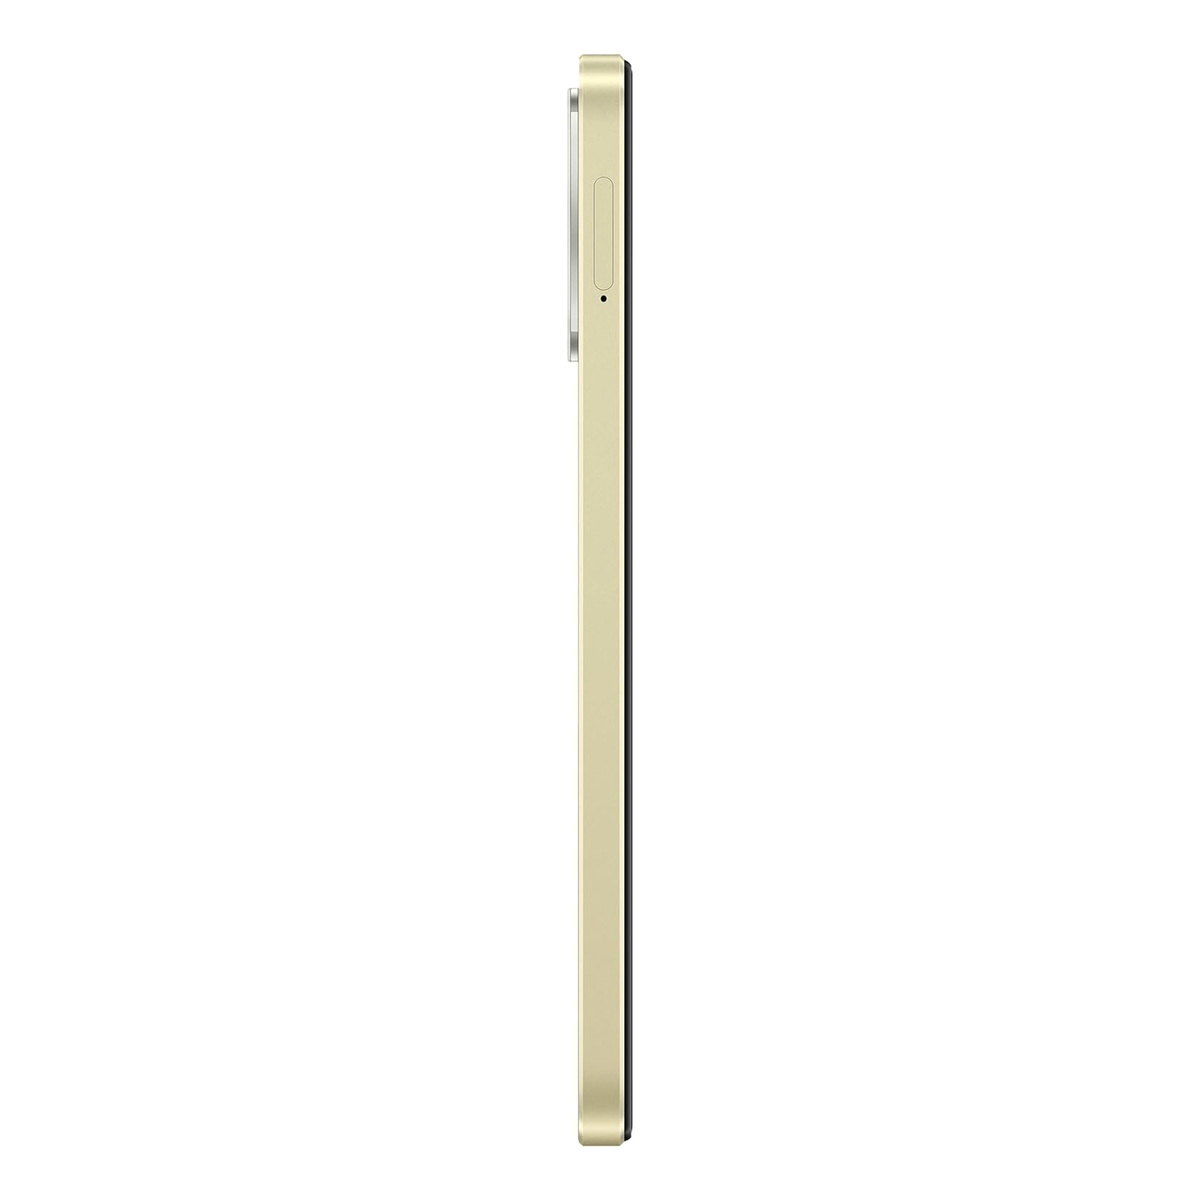 Oppo A38 4G Dual SIM Smartphone, 6 GB RAM, 128 GB Storage, Glowing Gold